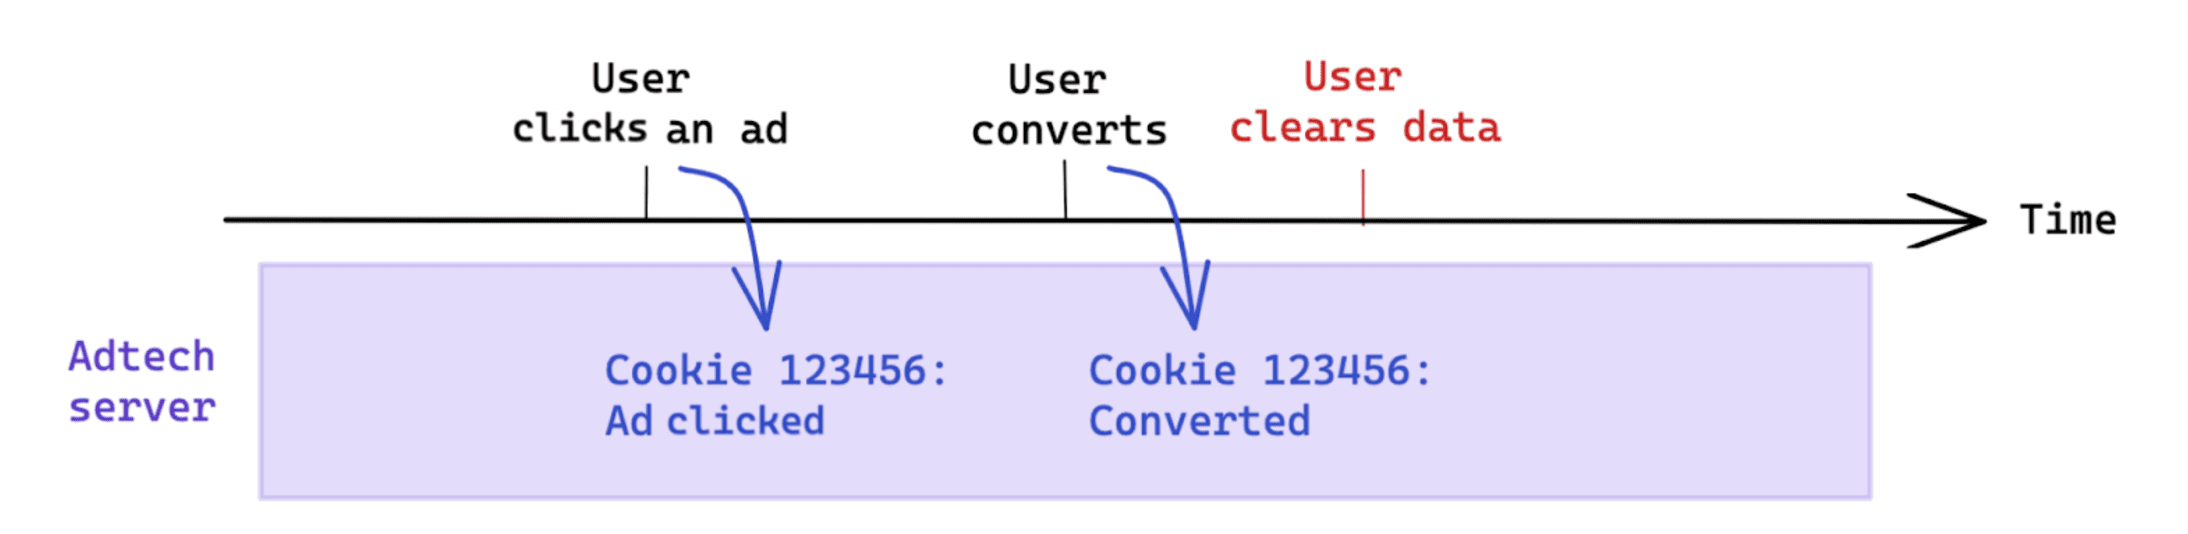 Penghapusan data yang dimulai pengguna setelah konversi tidak memengaruhi pengukuran berbasis cookie.